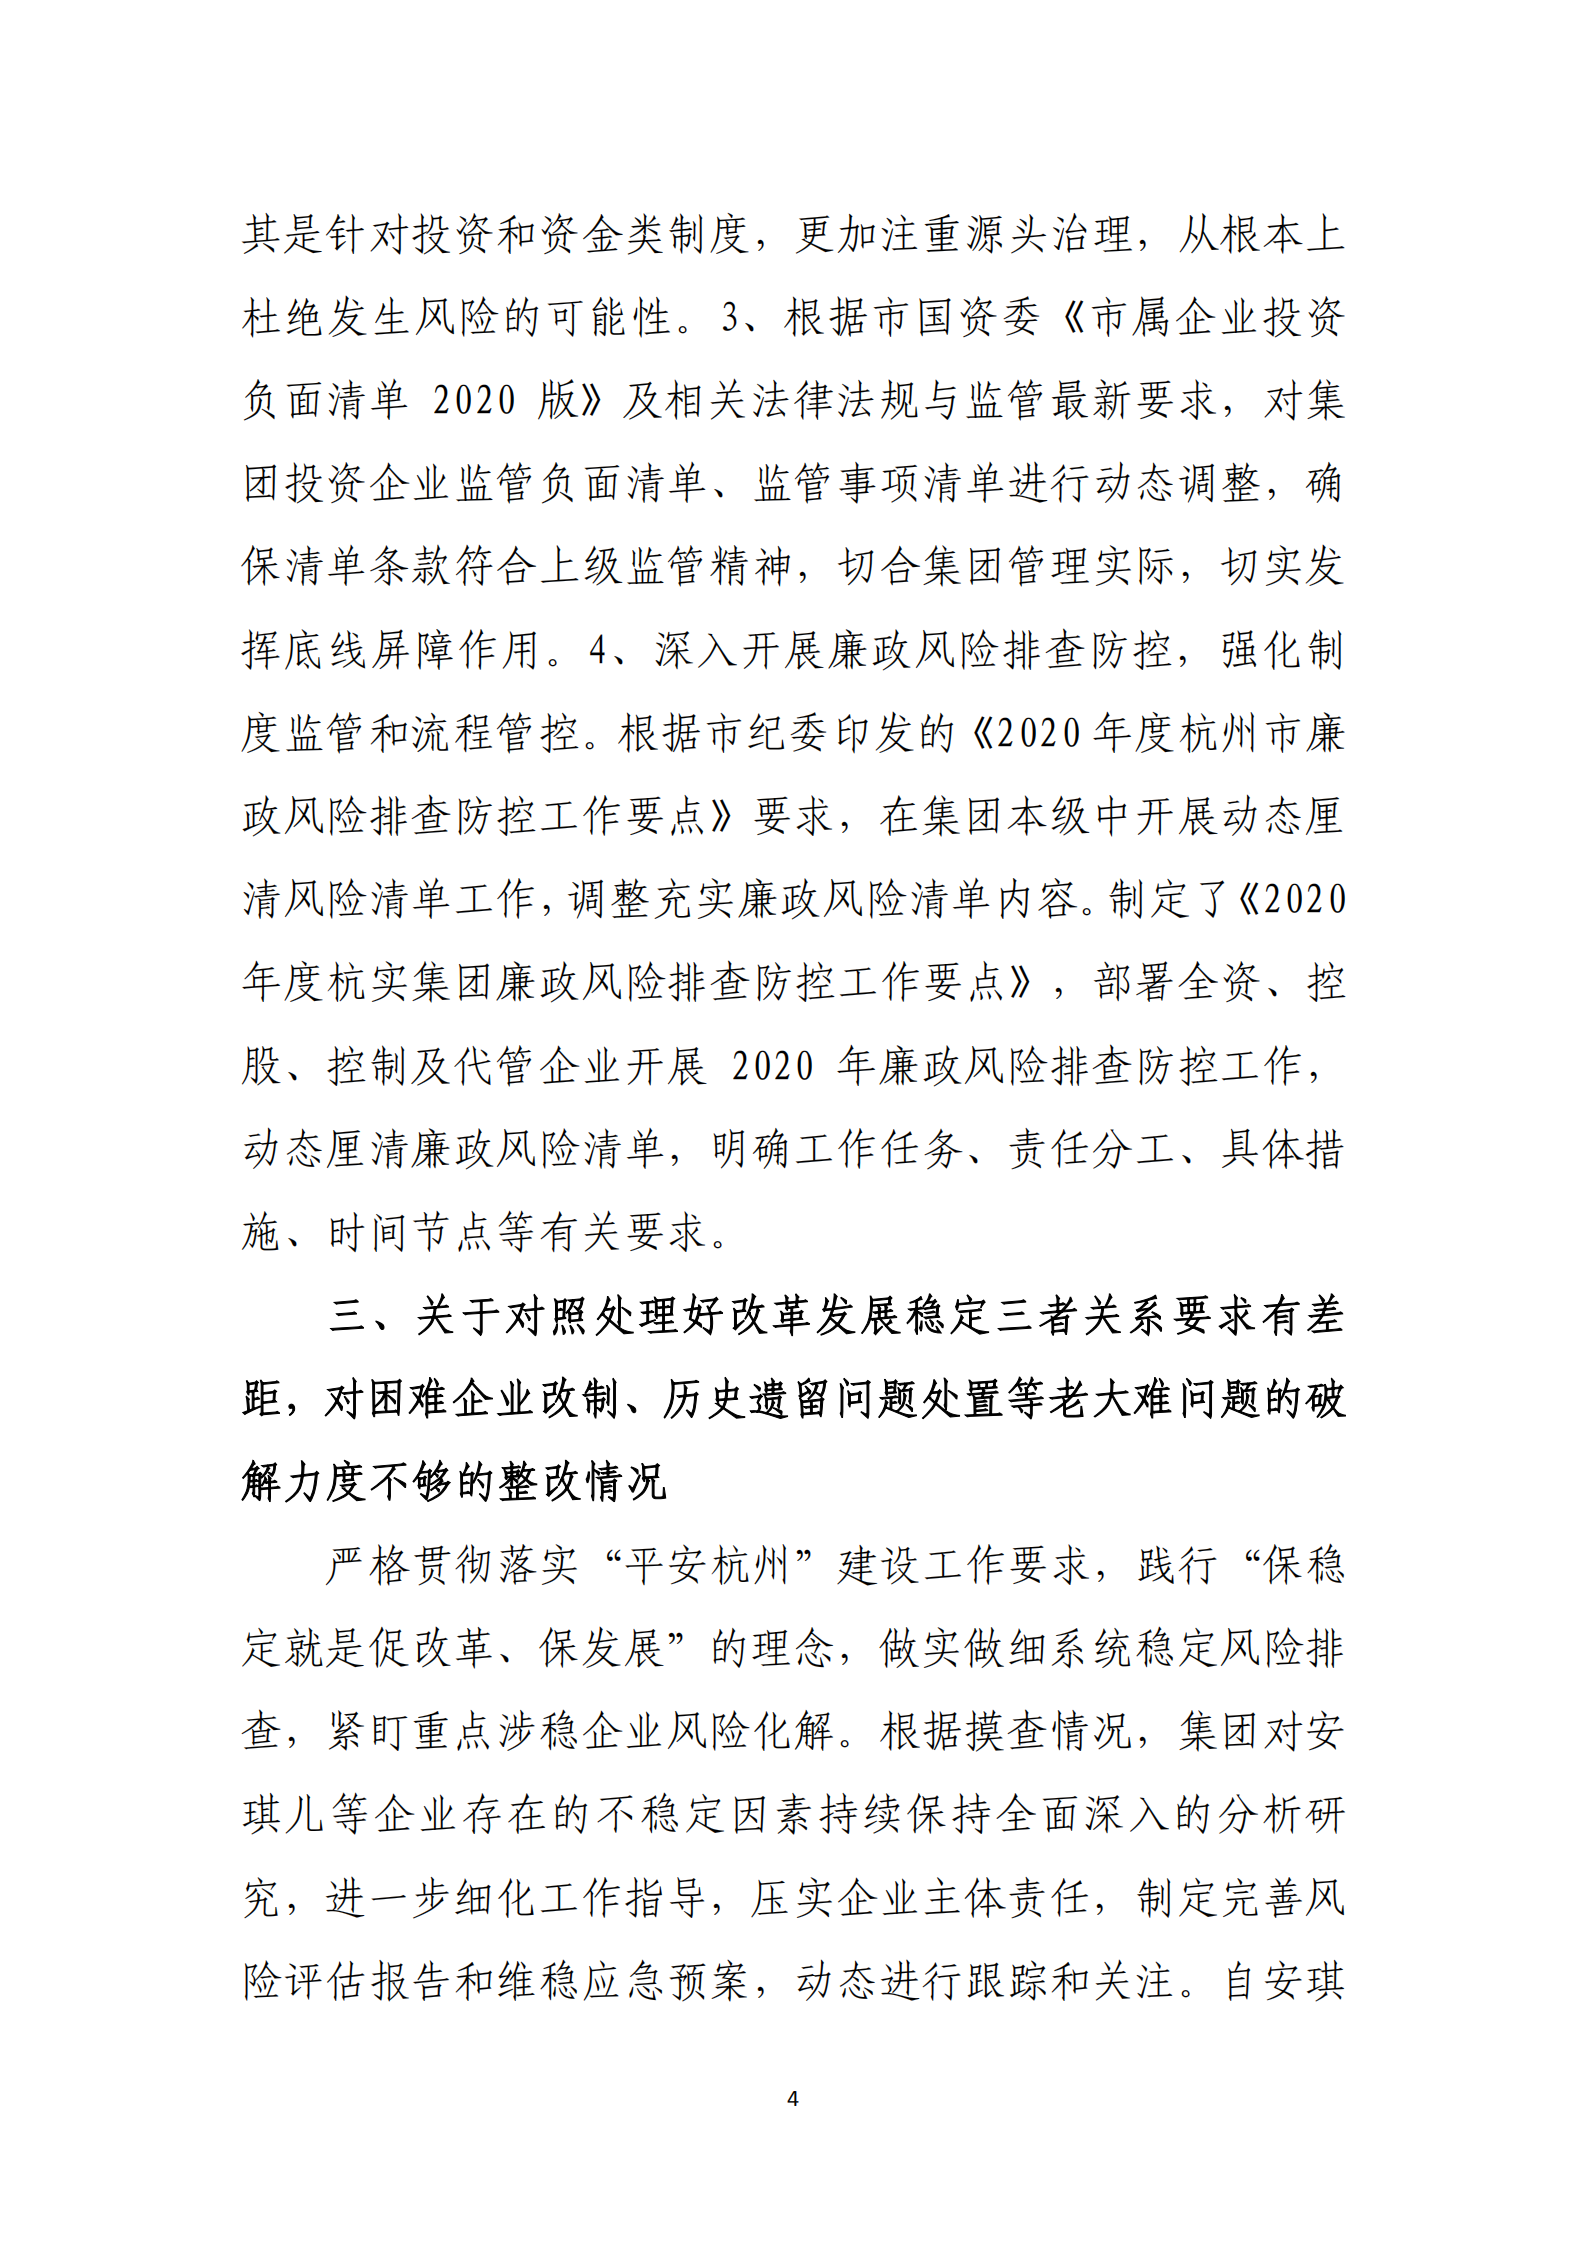 乐虎国际游戏官网党委关于巡察整改情况的通报_03.png